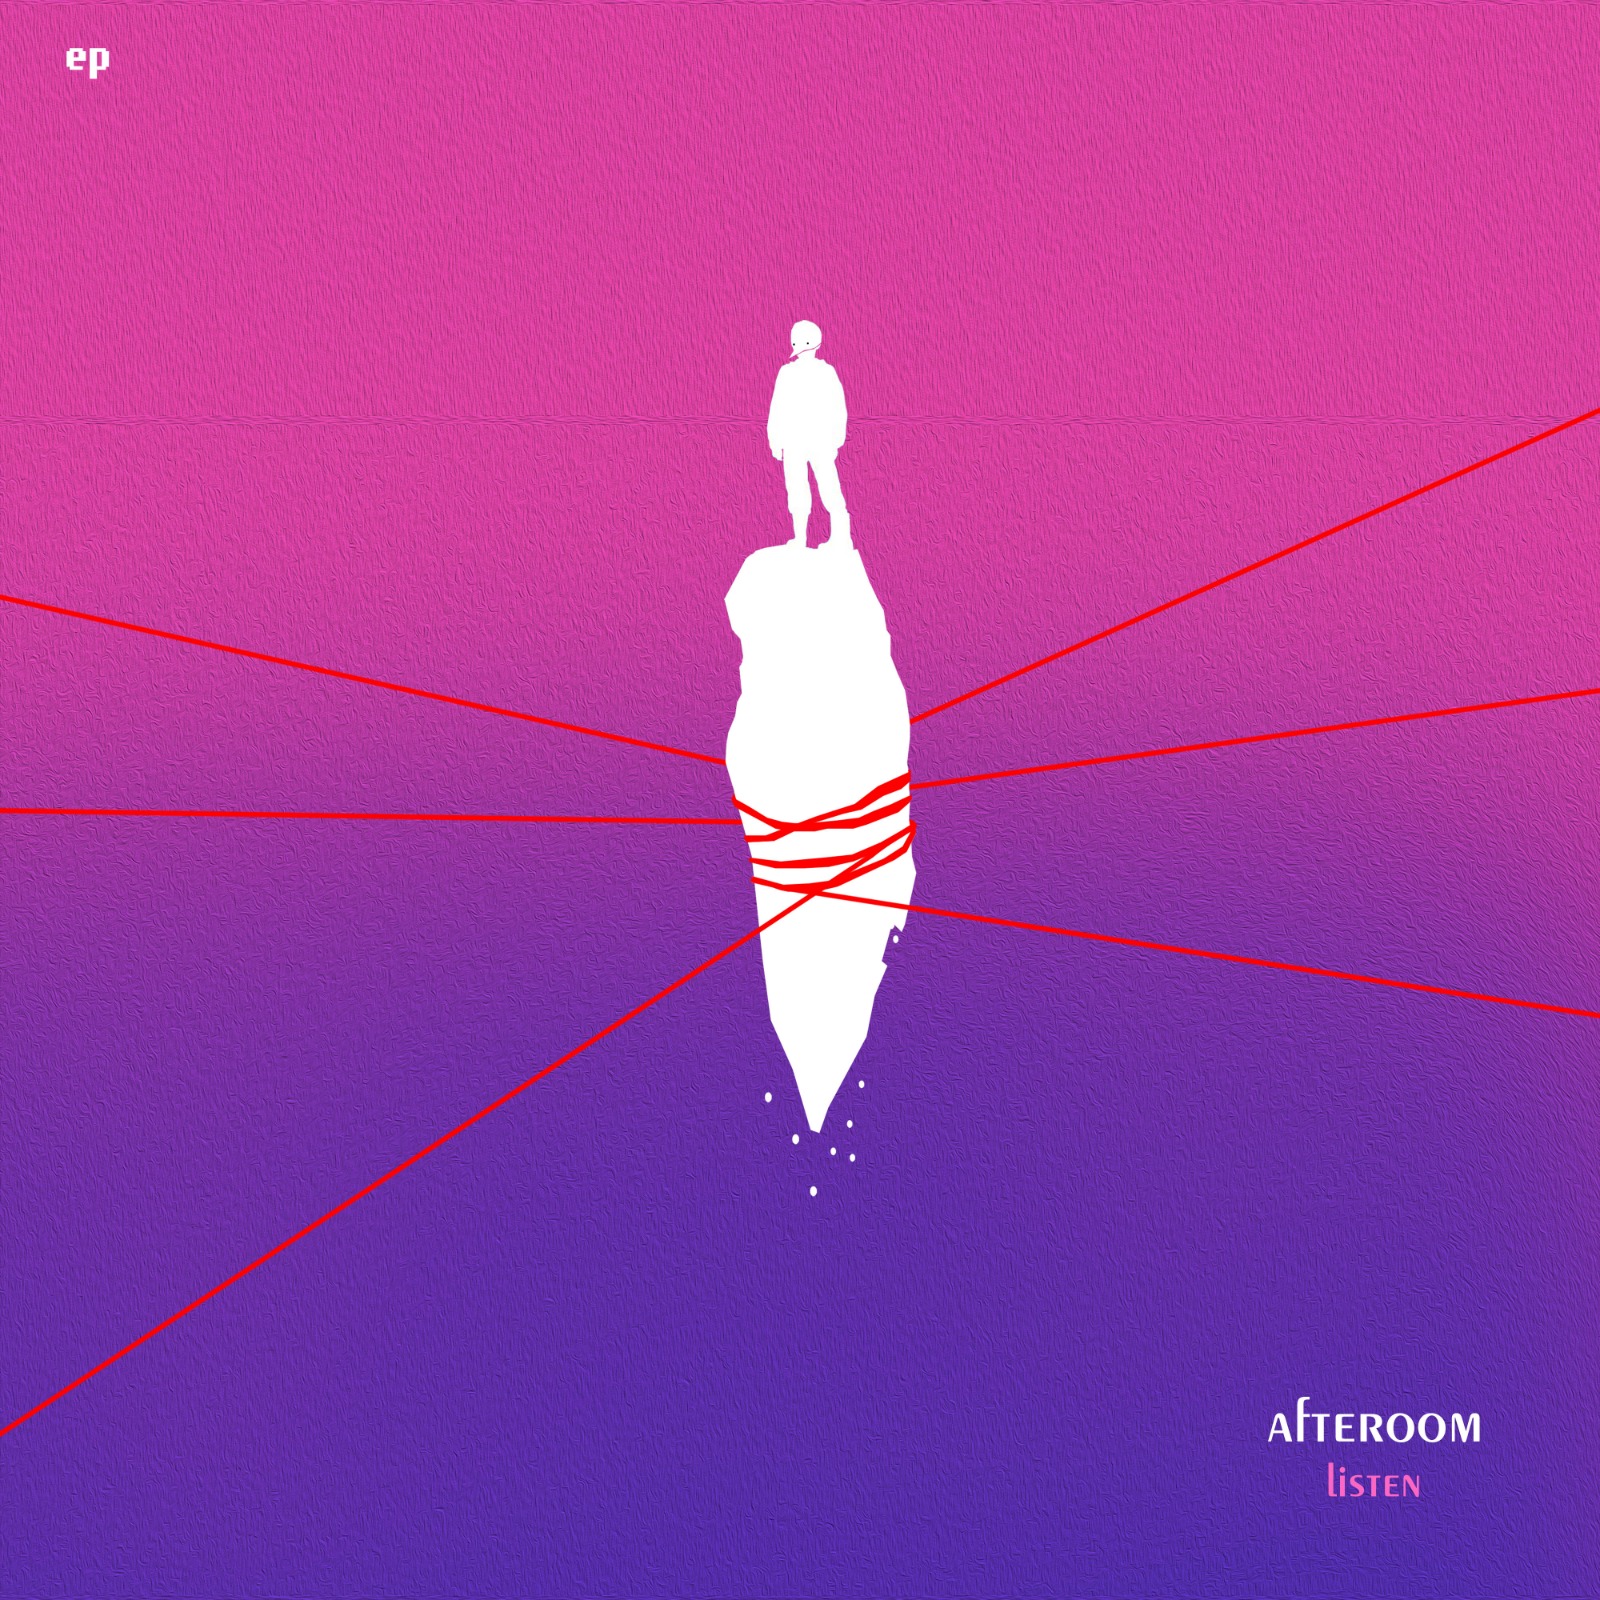 Afteroom Rilis Album EP Bertajuk Listen, Sajikan 2 Lagu Terbaru 